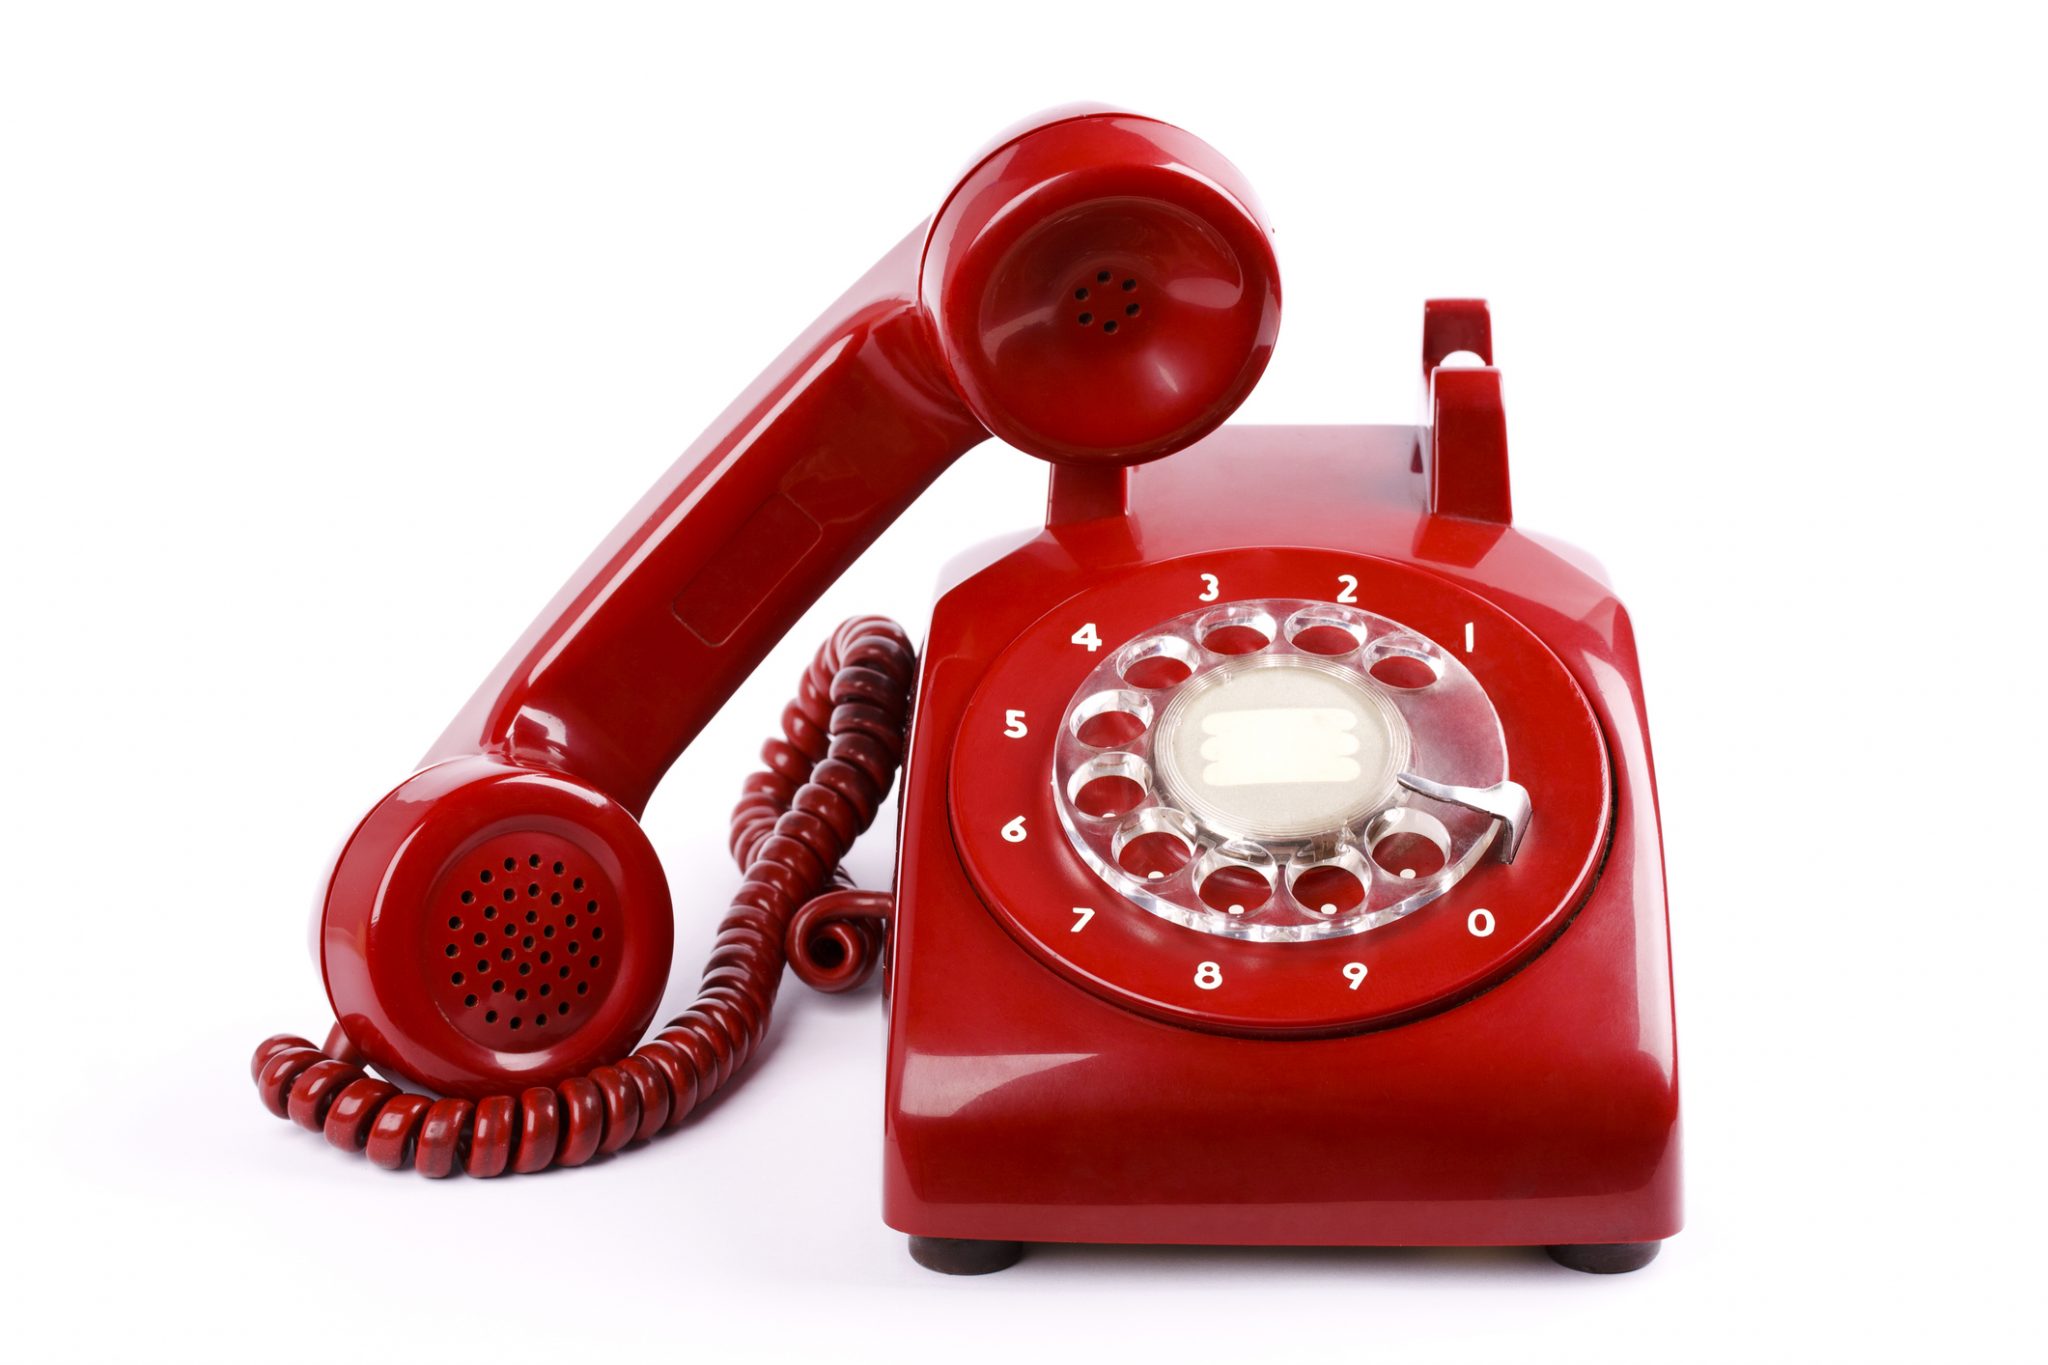 Телефон 7 473. Горячая линия. Красный телефон. Телефонная трубка. Красный телефонный аппарат.